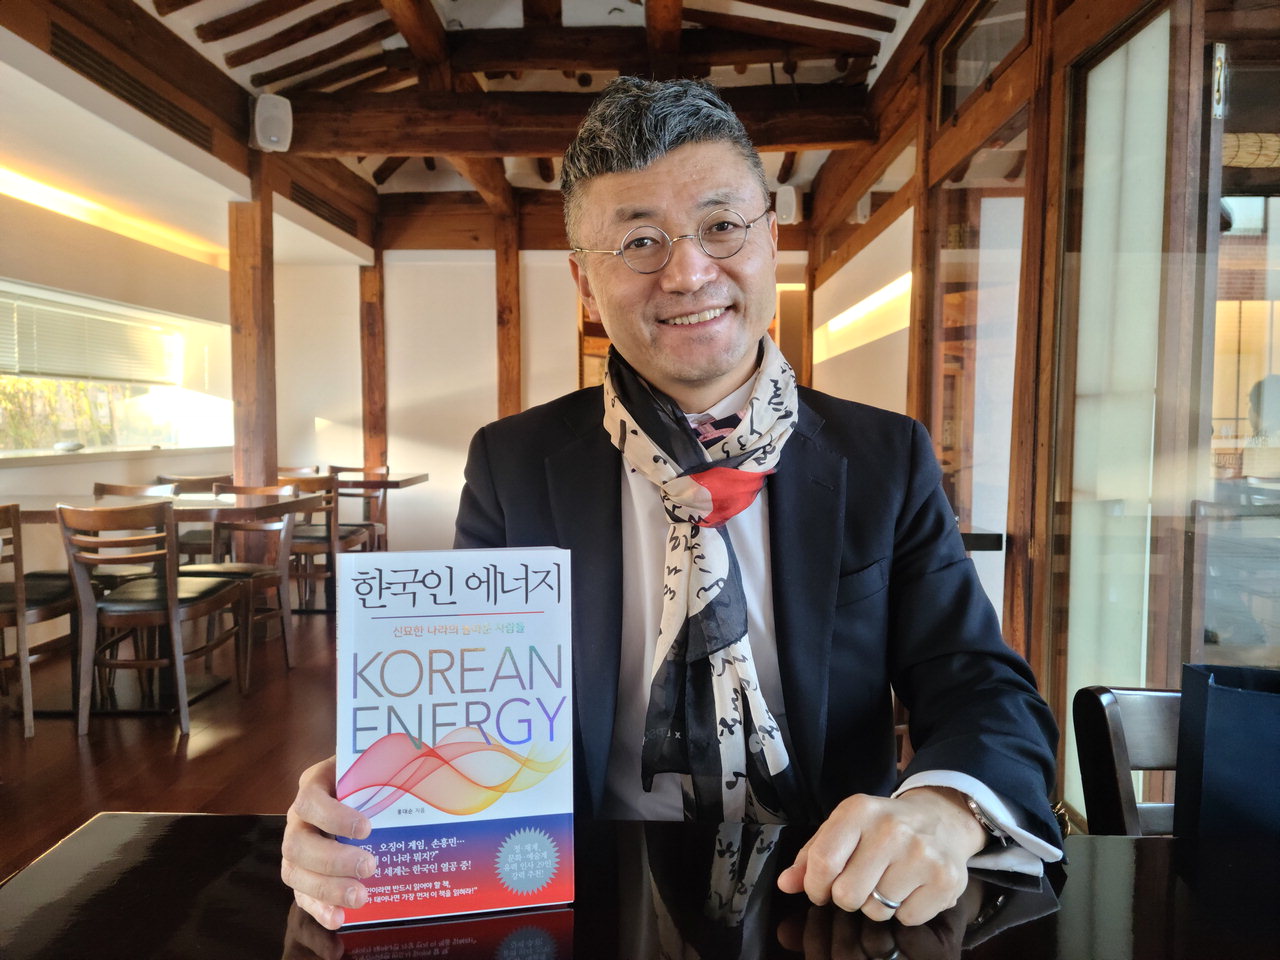 홍대순 글로벌전략정책연구원장이 저서인 '한국인 에너지'를 들고 포즈를 취하고 있다. 